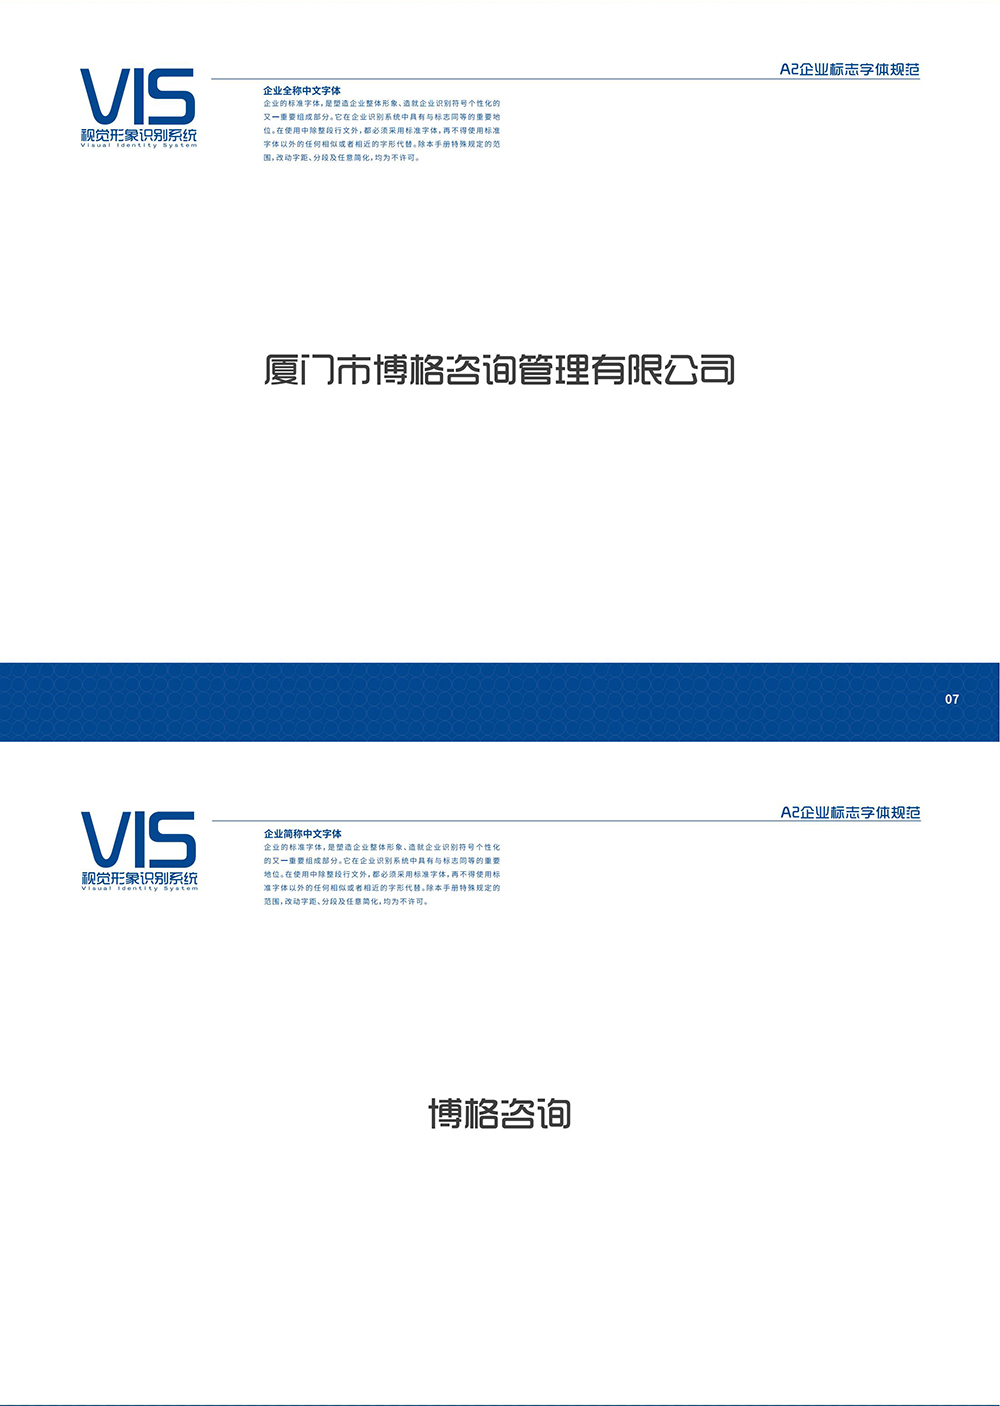 VIS视觉形象系统_00_04.jpg